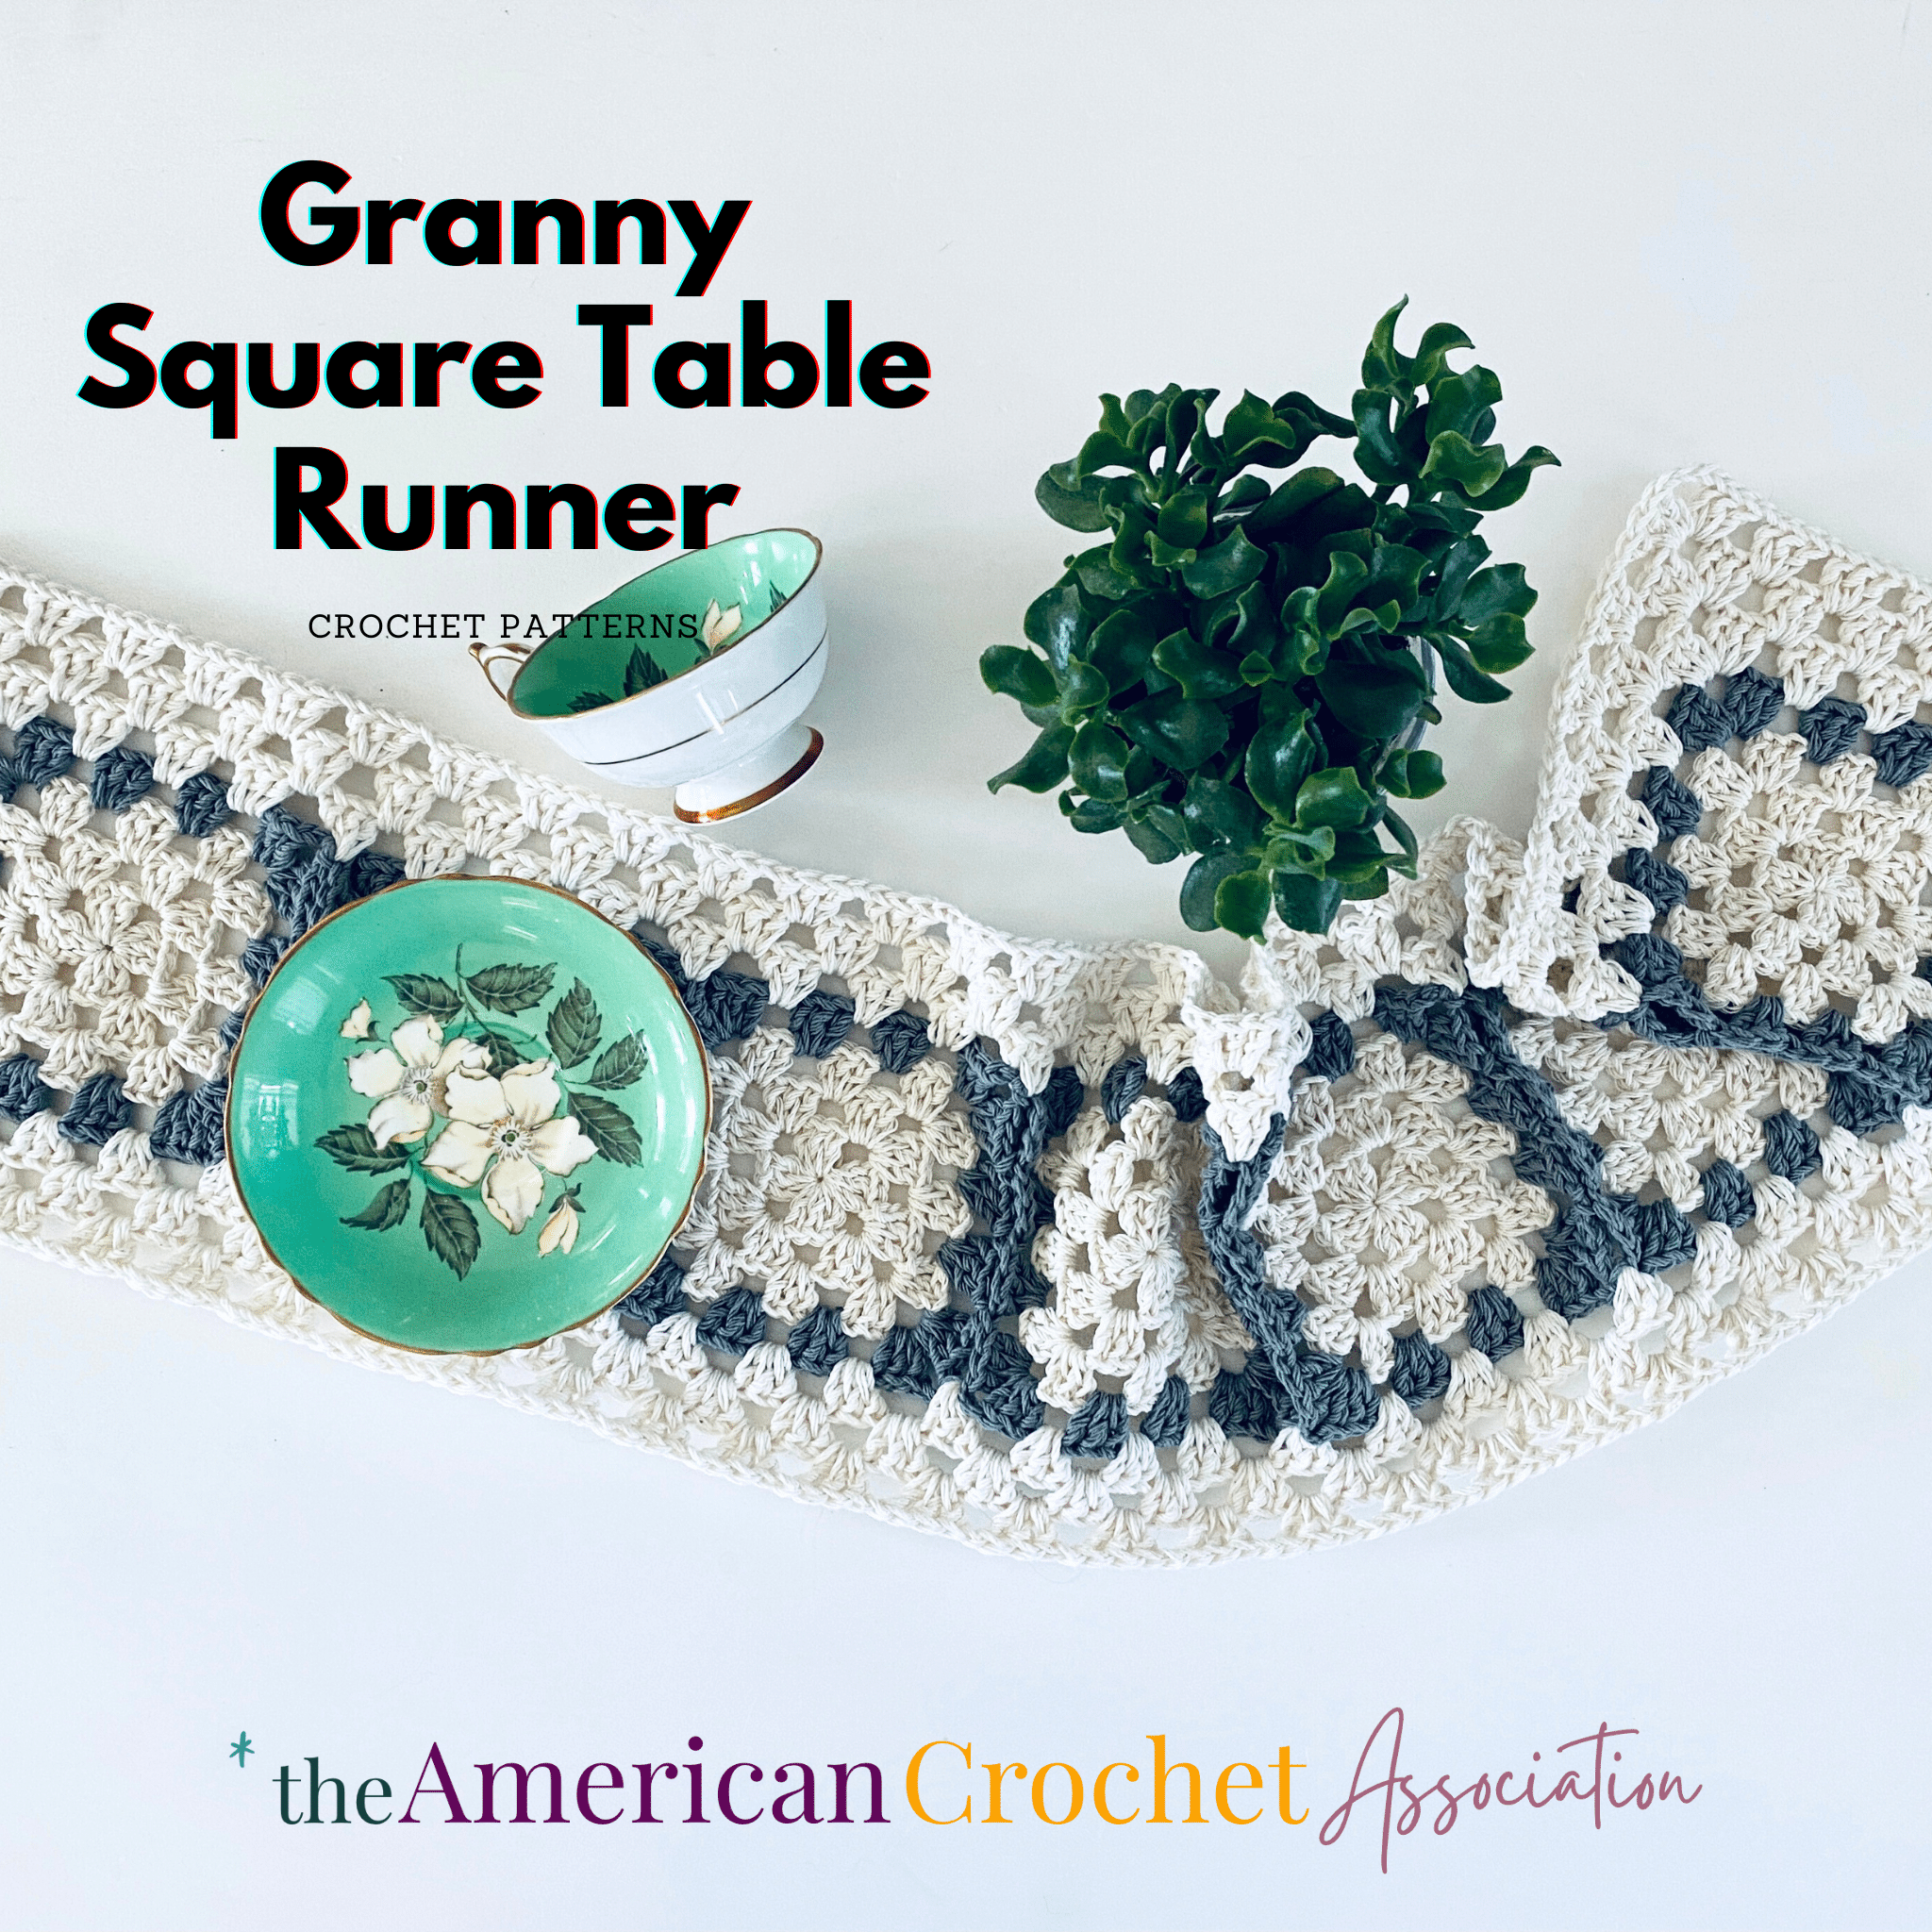 Granny Square crochet Table Runner on White Table Crochet Pattern - American Crochet Association